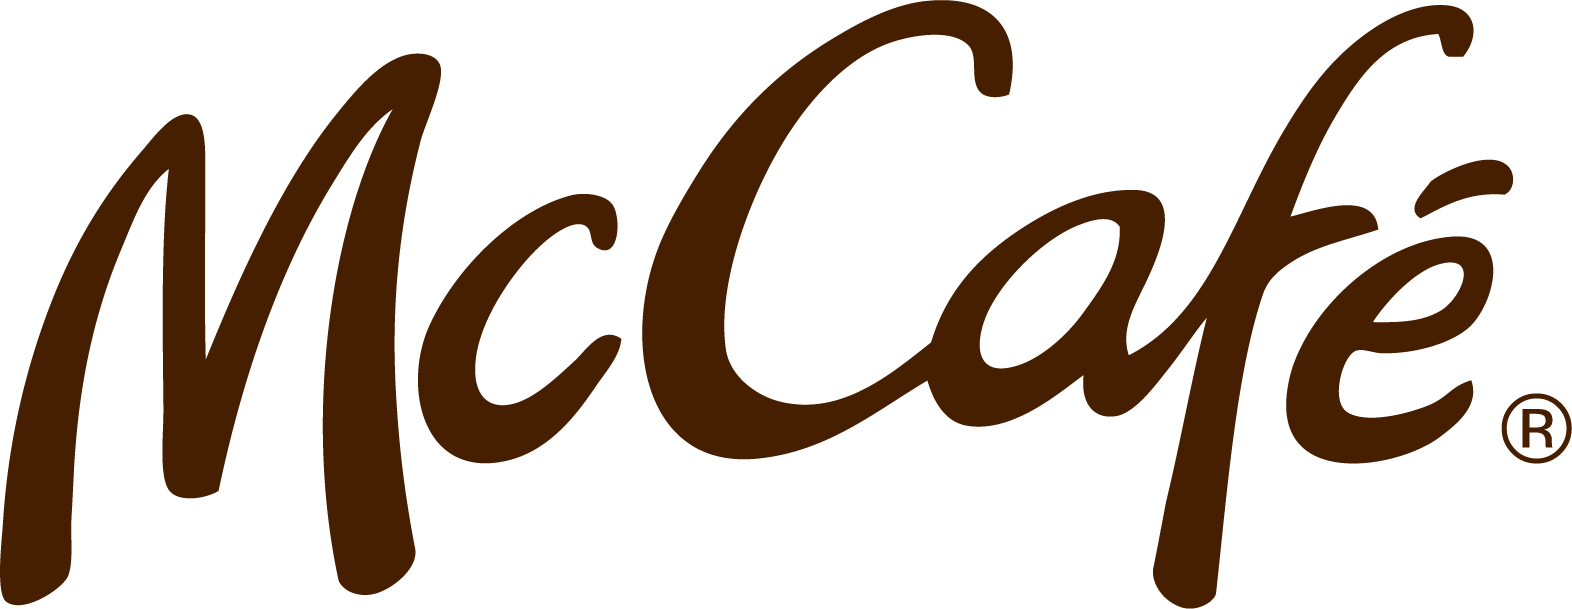 McCafe Wordmark